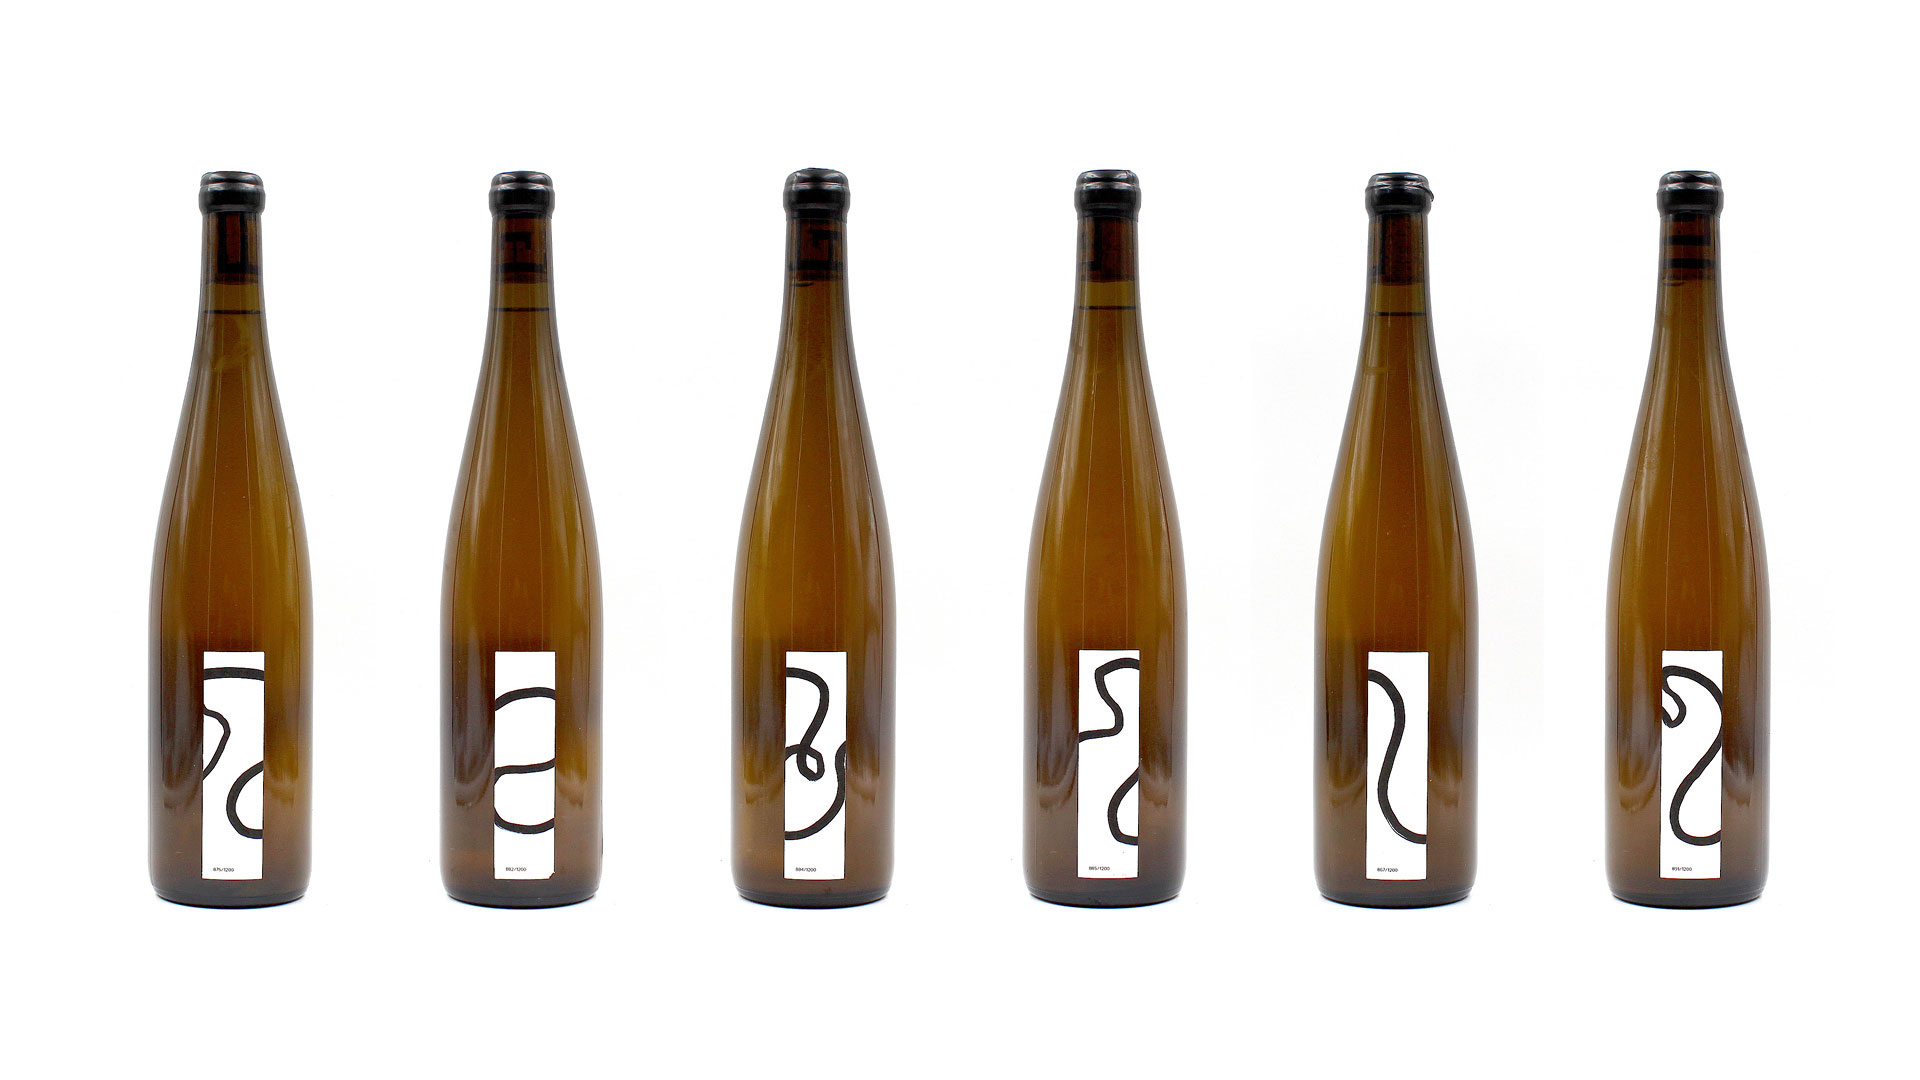 Étiquettes et bouteilles des Grands esprits — vin d’Alsace